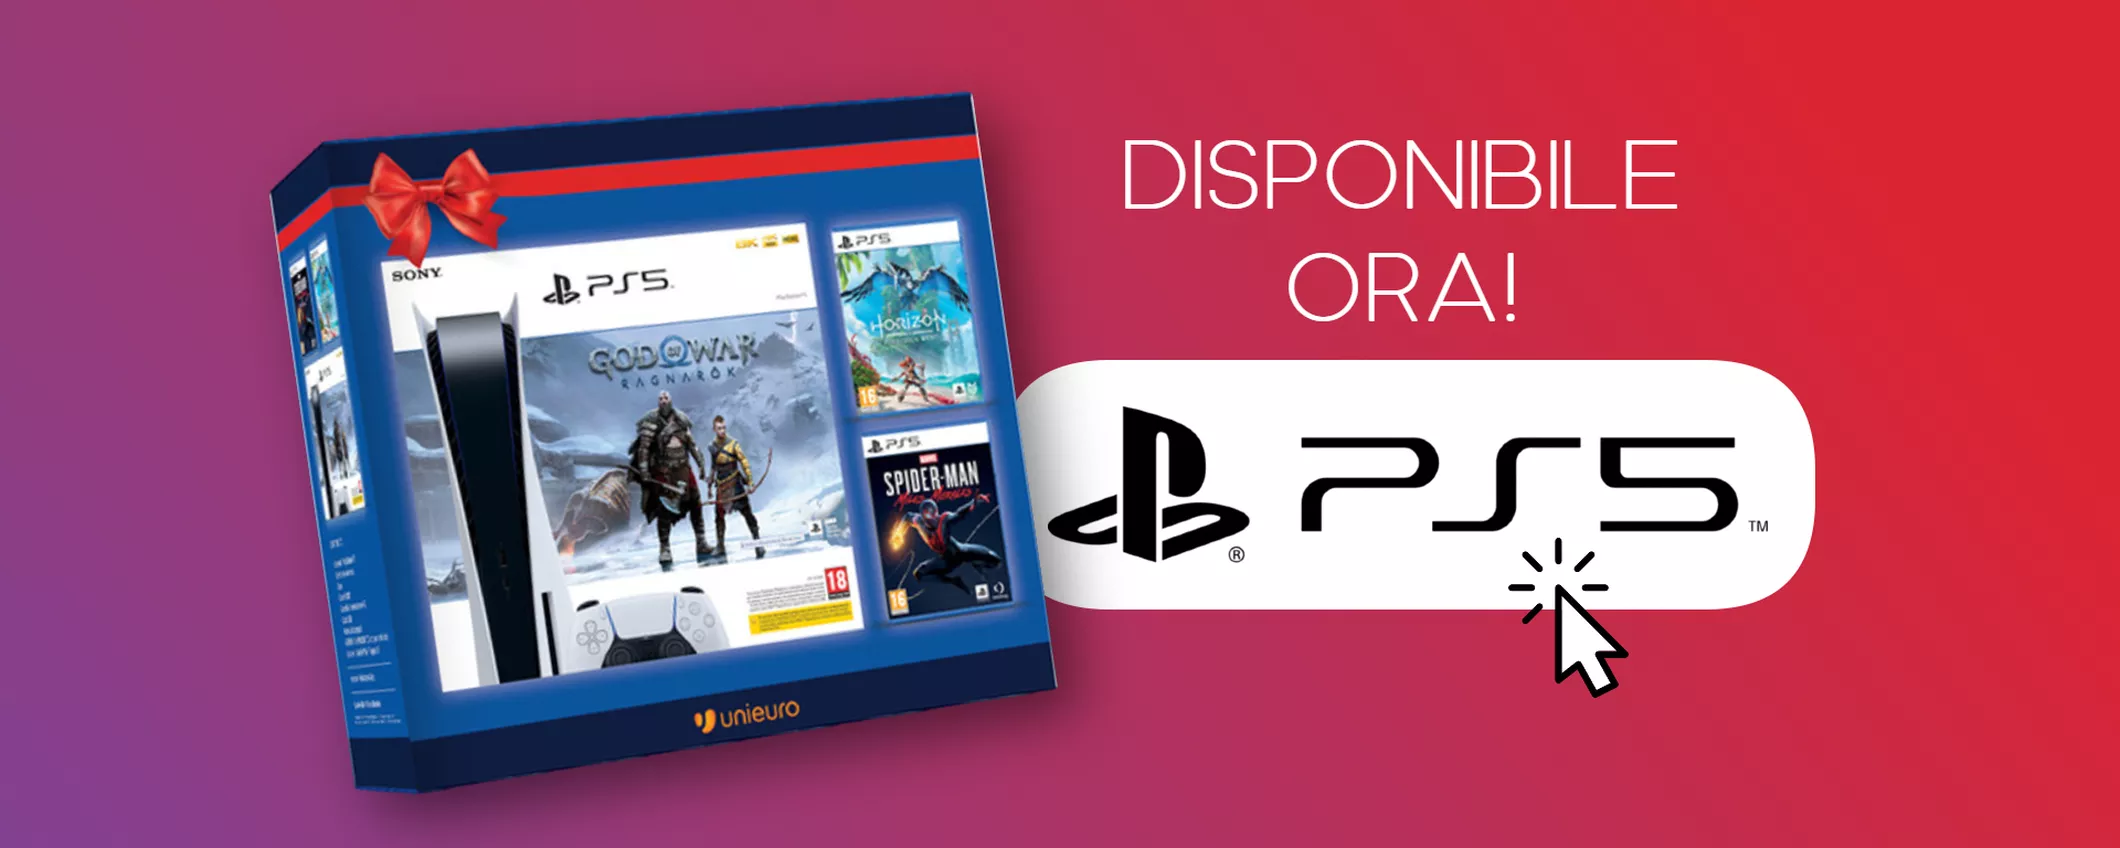 PlayStation 5 con God of War, Horizon e Miles Morales DISPONIBILE ORA su Unieuro